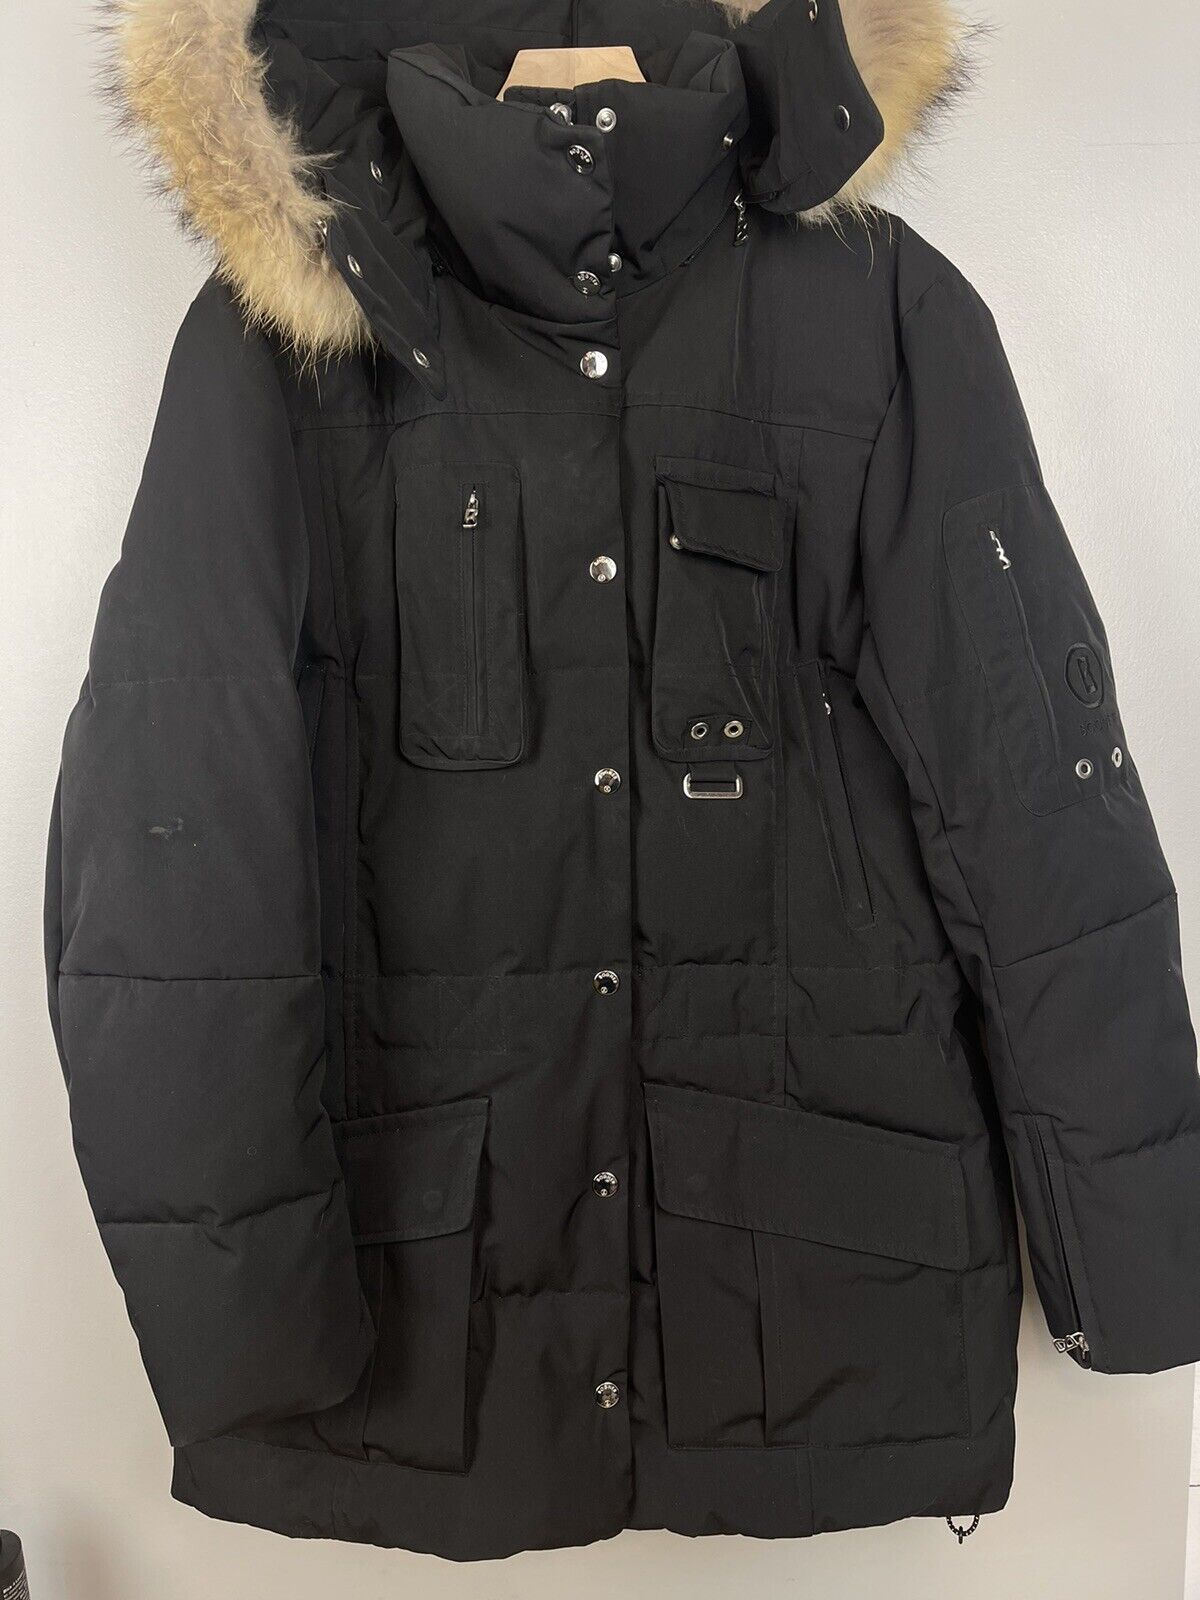 Bogner Women’s Black Leopard Print Hood Fur Ski Down Jacket Size 42 US 12